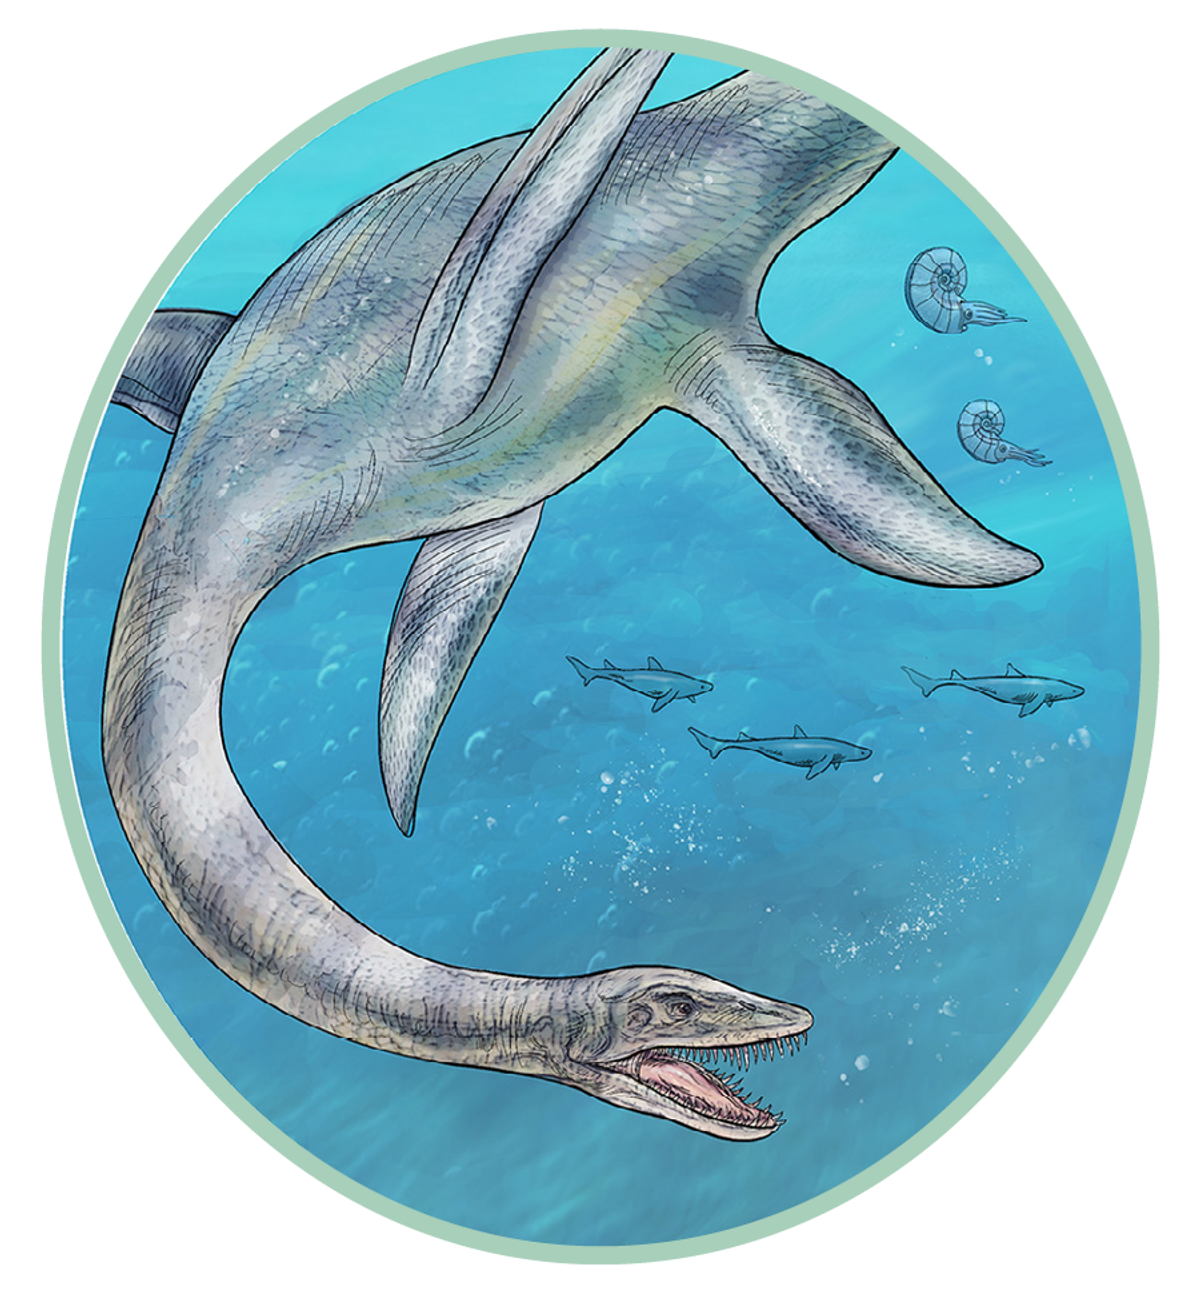 Illustration of extinct creatures from the Cretaceous-Paleogene period